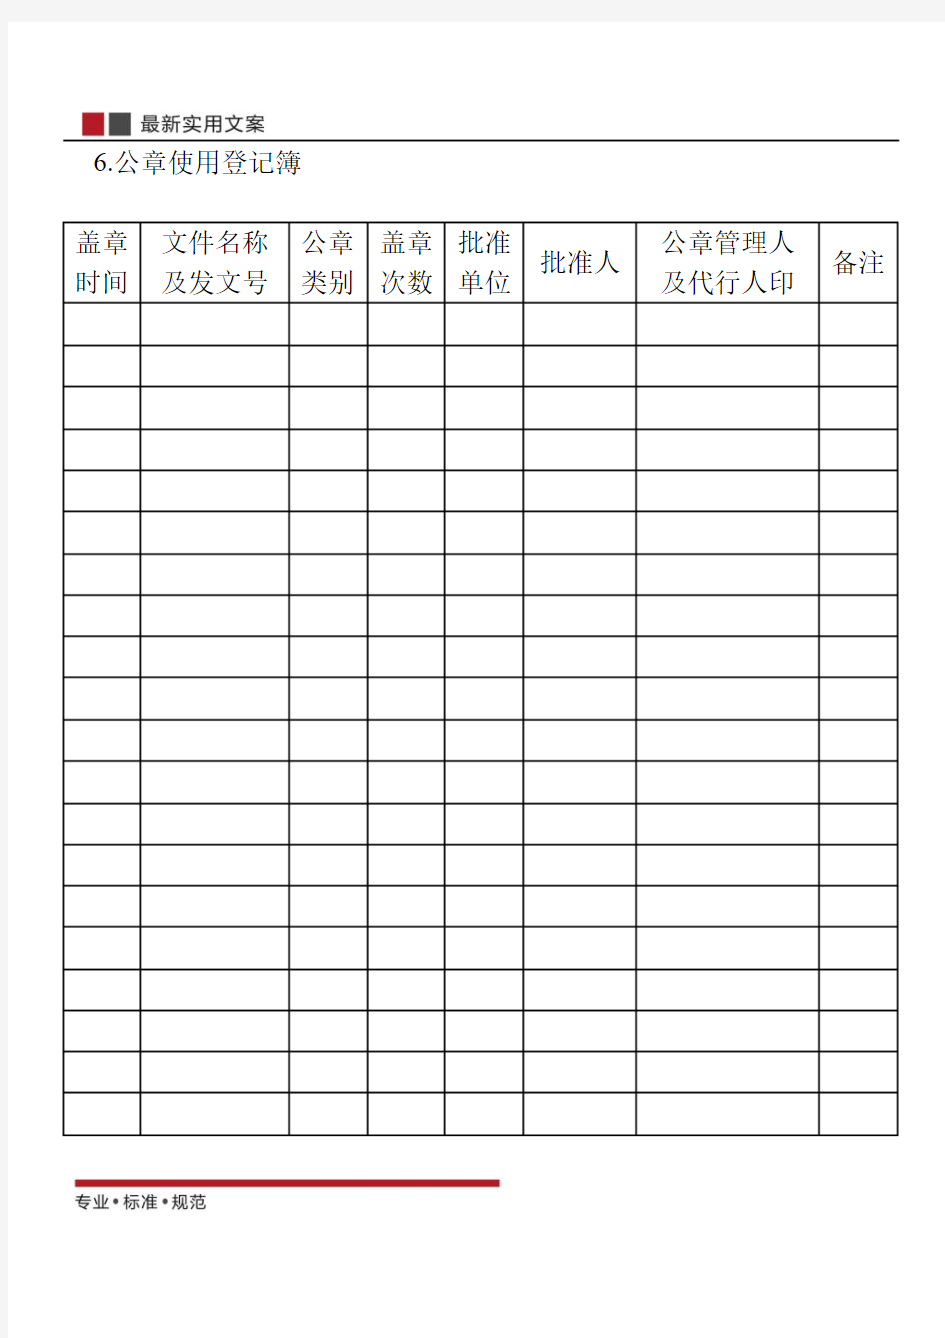 【范本】公章使用登记簿(标准模板)